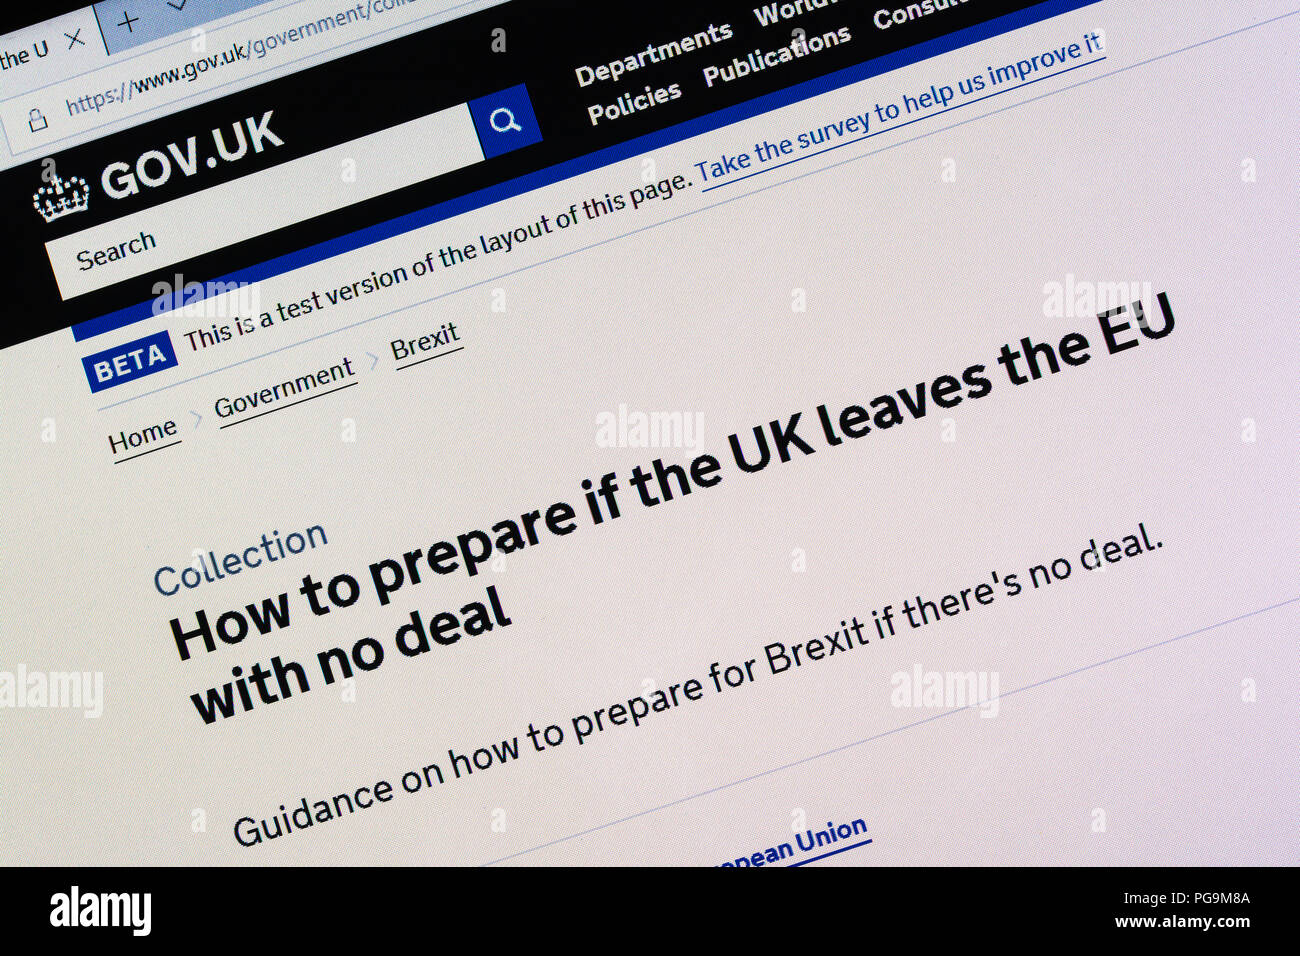 Gov.uk Website Screenshot Anzeigen von Informationen über die Vorbereitungen der britischen Regierung für eine kein deal Brexit Szenario, August 2018 Stockfoto